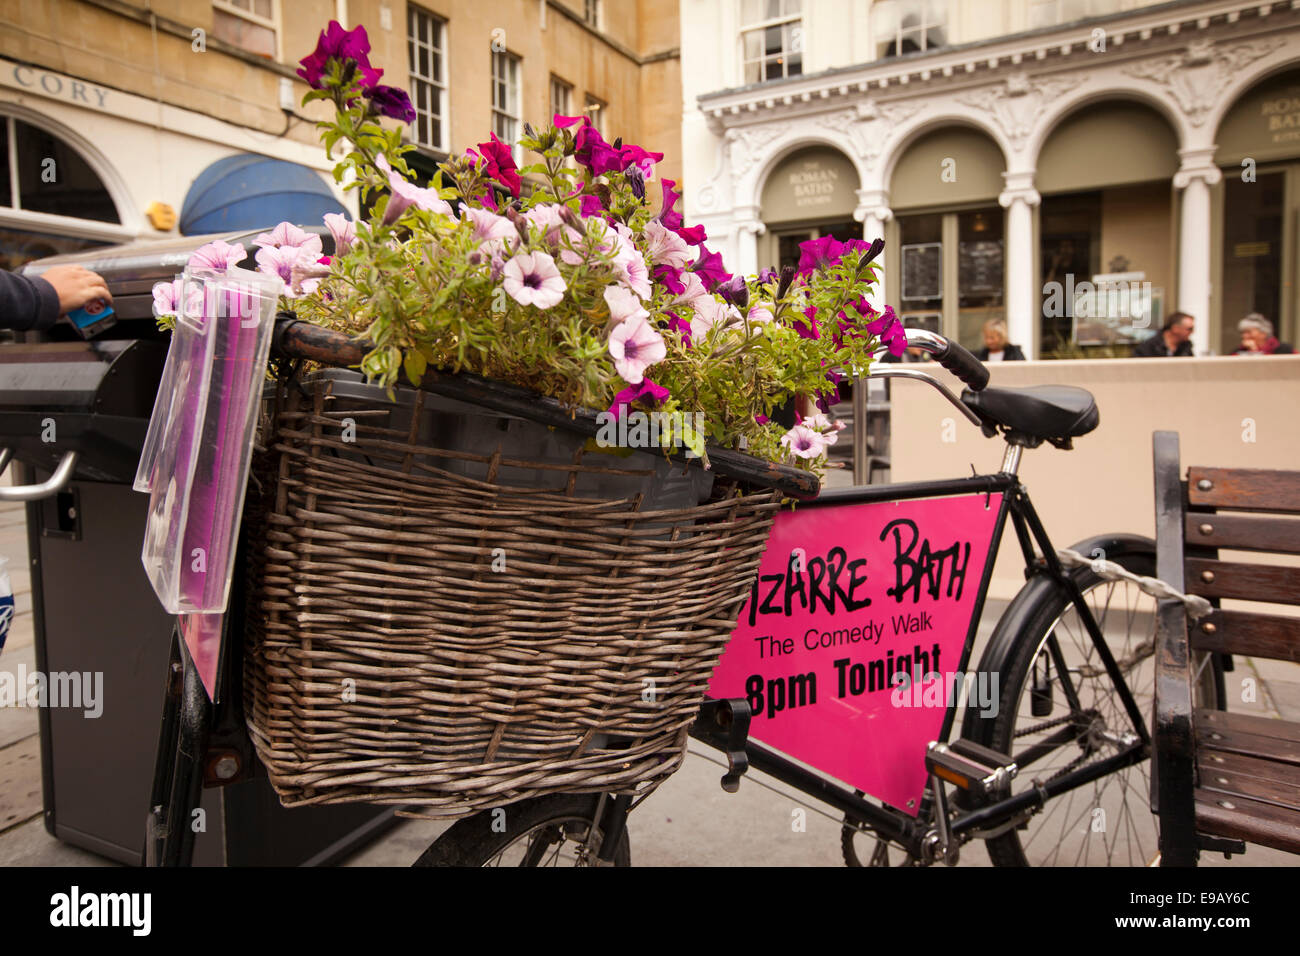 Royaume-uni, Angleterre, dans le Wiltshire, baignoire, cimetière de l'abbaye, florally planté Butcher's bike publicité panier dans la comédie à pied Banque D'Images